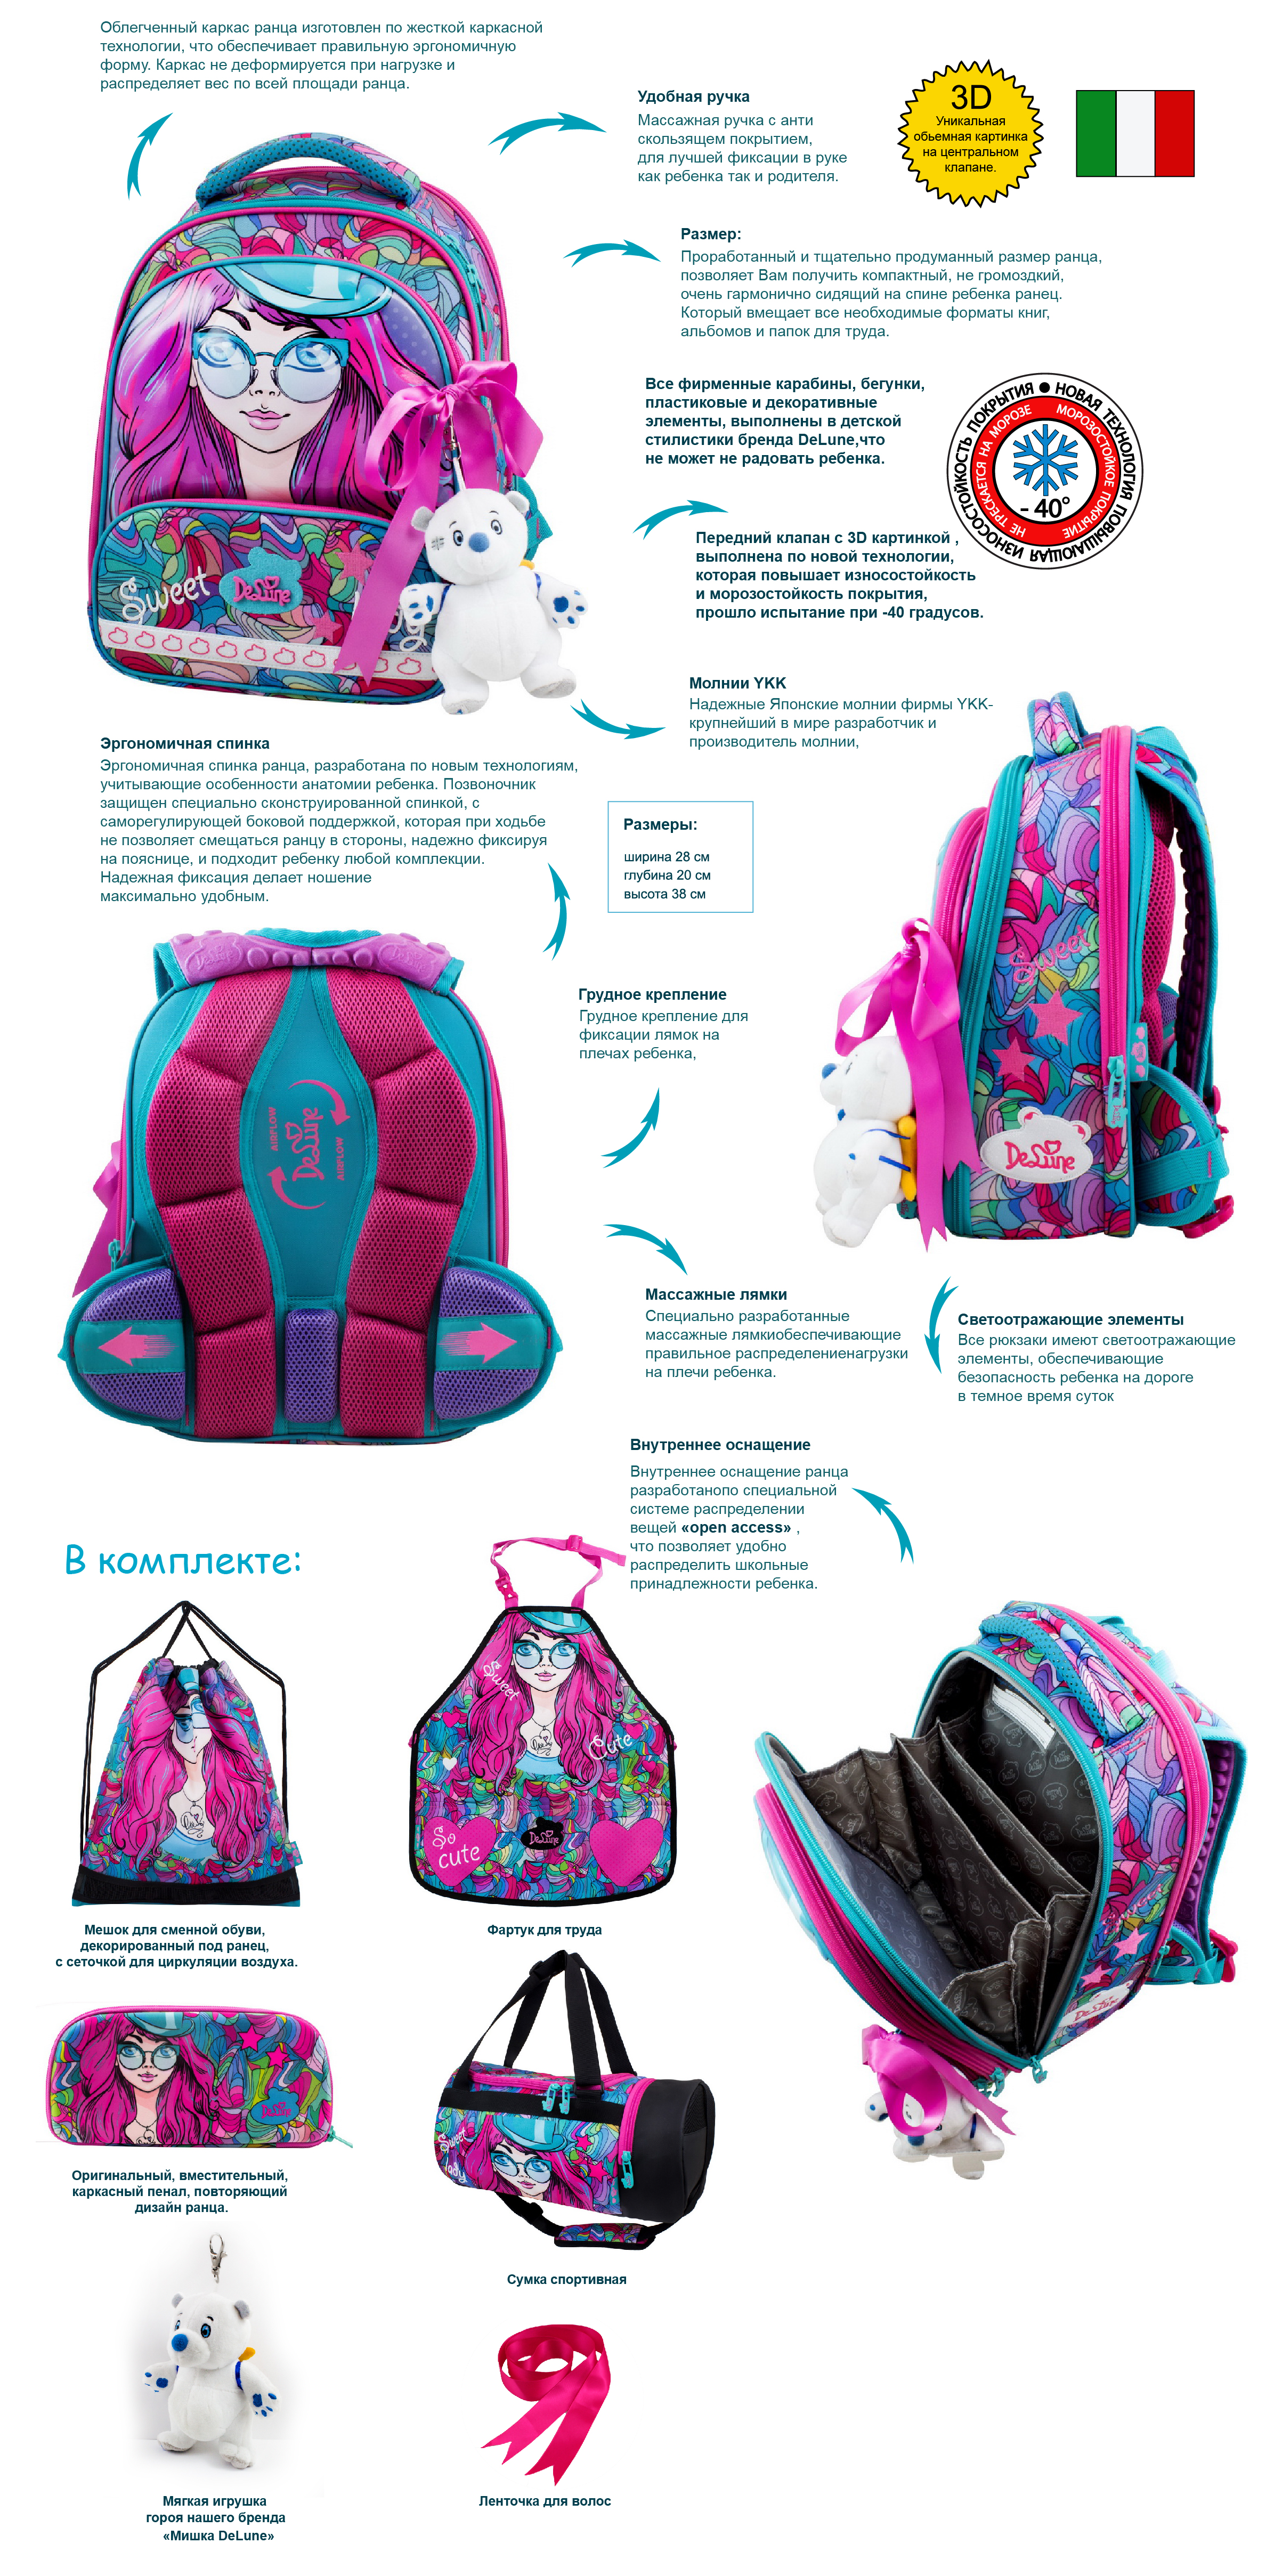 Обзор Ранец DeLune Full-set 9-124 + мешок + жесткий пенал + спортивная сумка + фартук для труда + мишка + ленточка